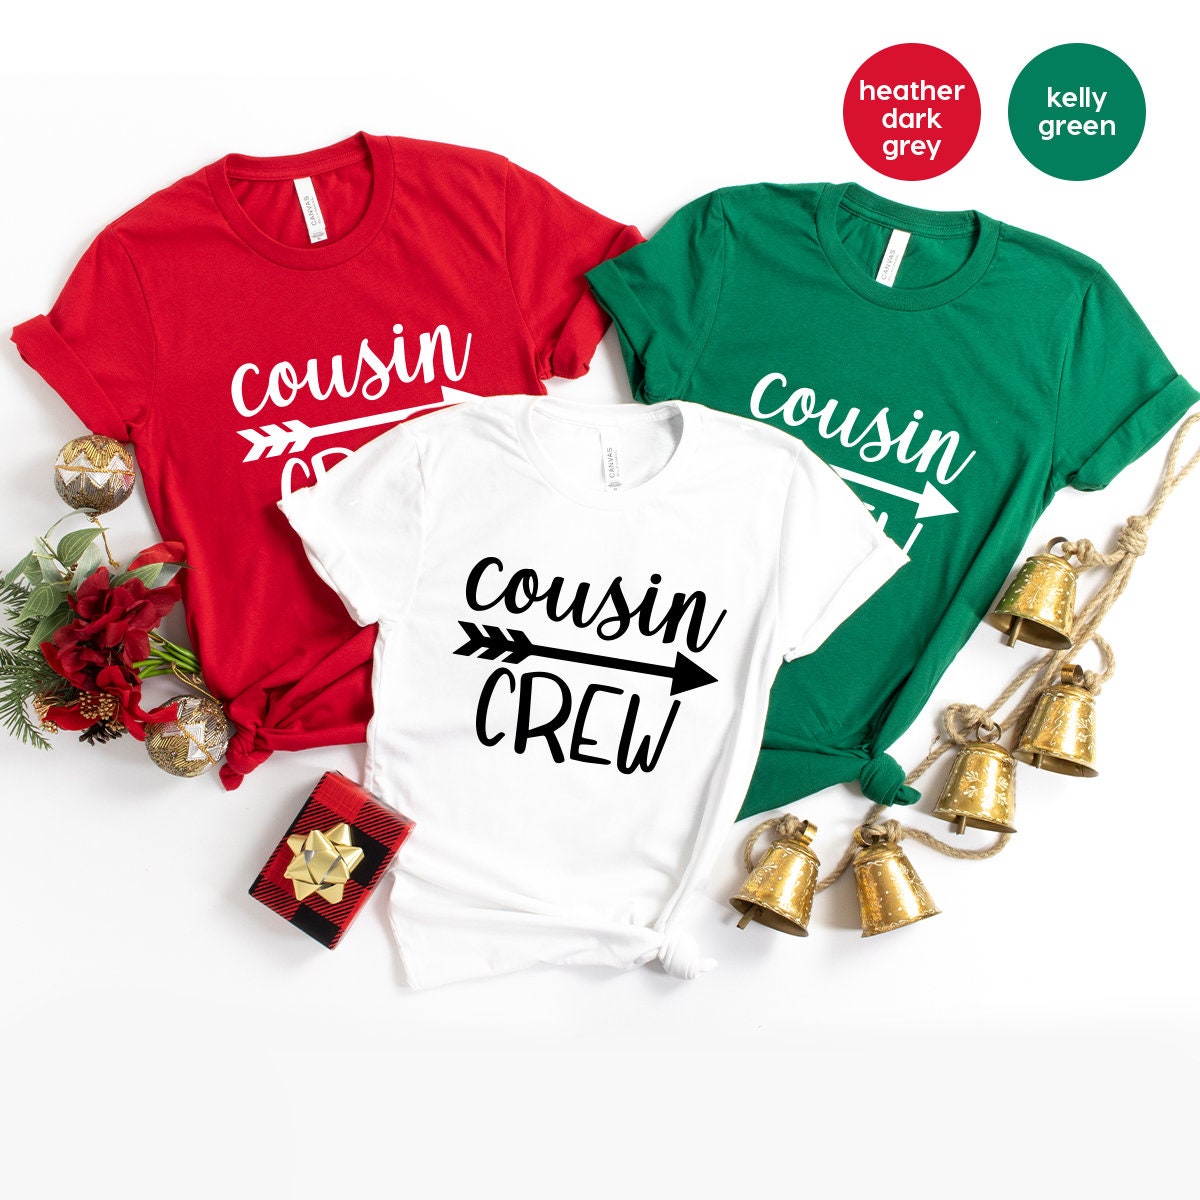 Matching Cousin Shirt, Cousin Crew T-Shirt, Christmas Cousin Gift, Family Christmas Shirt, Christmas T Shirt, Cousin Crew Shirt - Fastdeliverytees.com